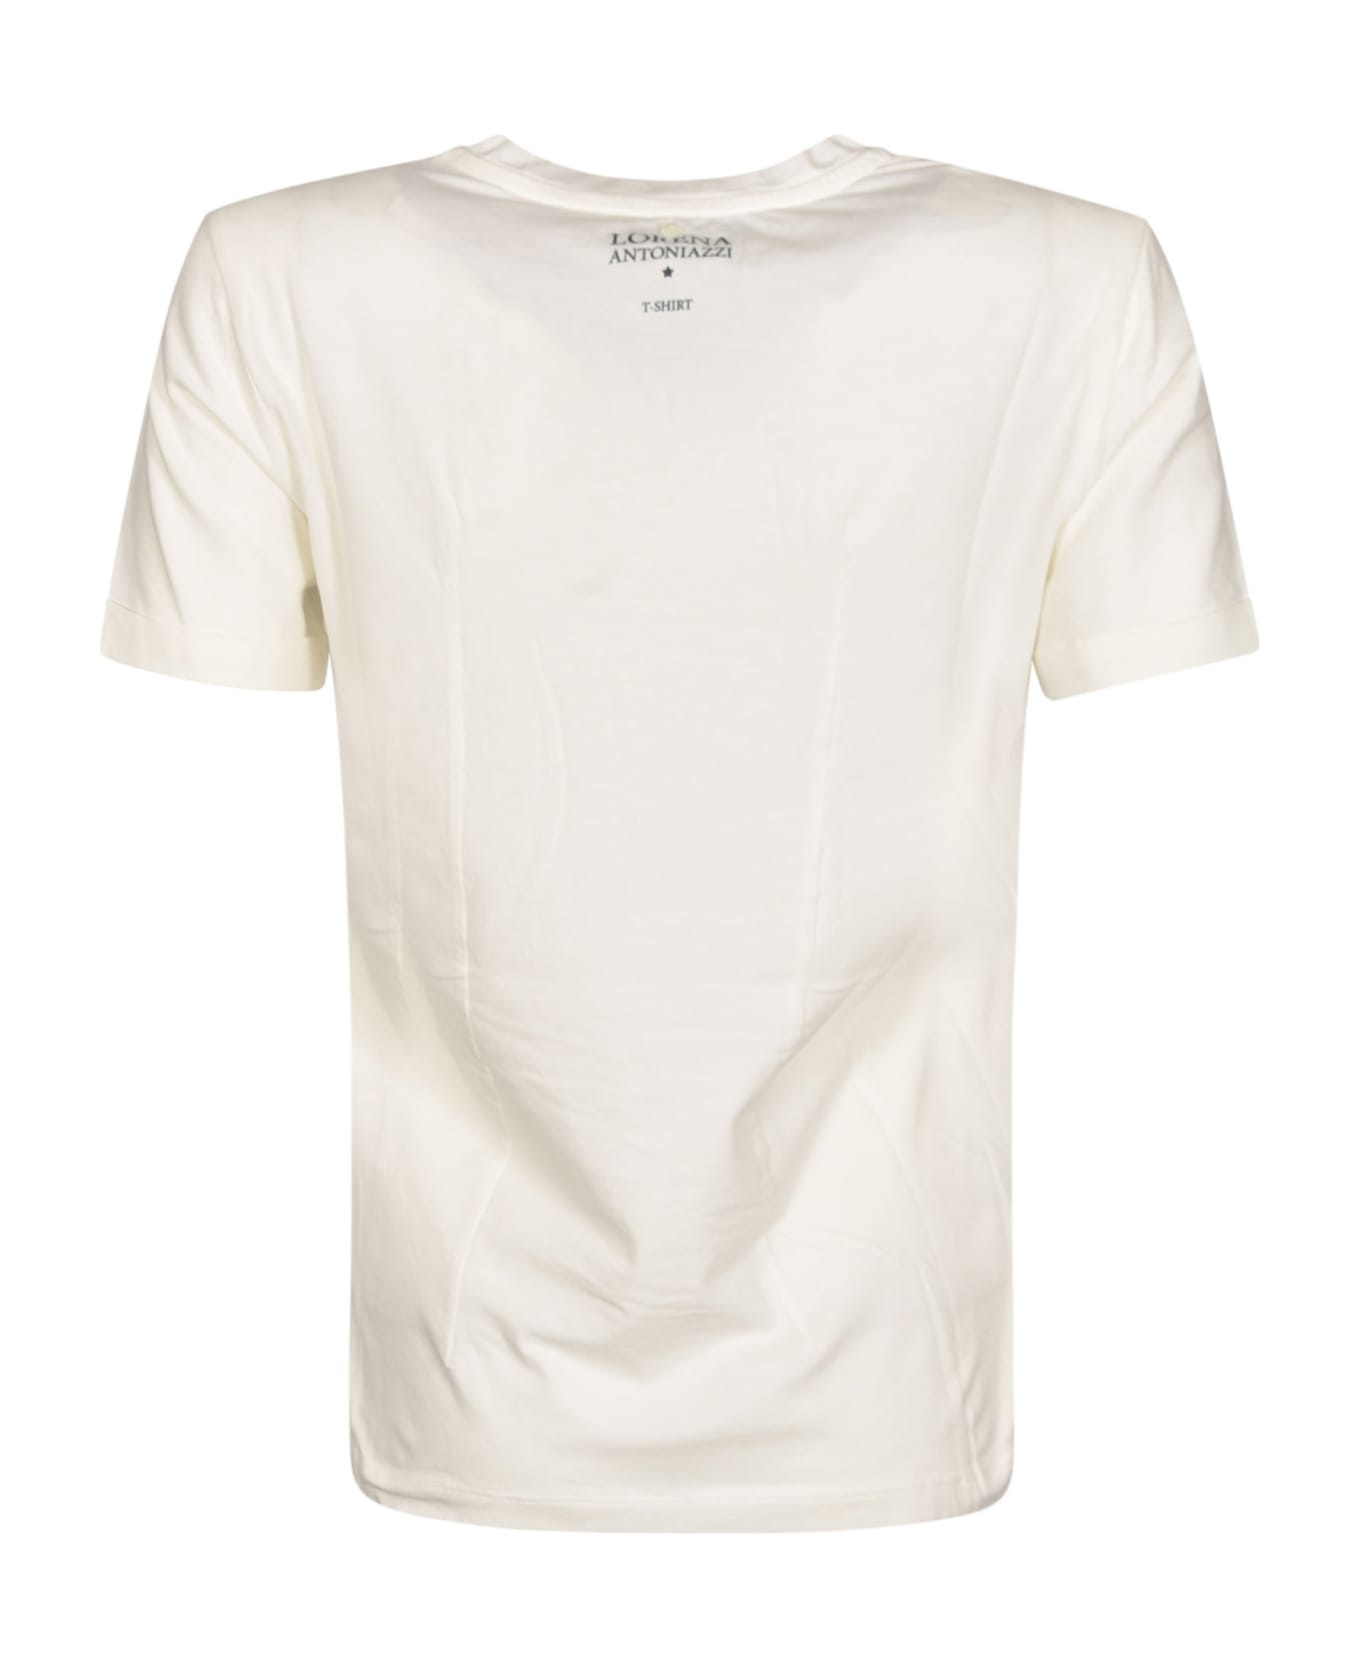 Lorena Antoniazzi Pocket T-shirt - White